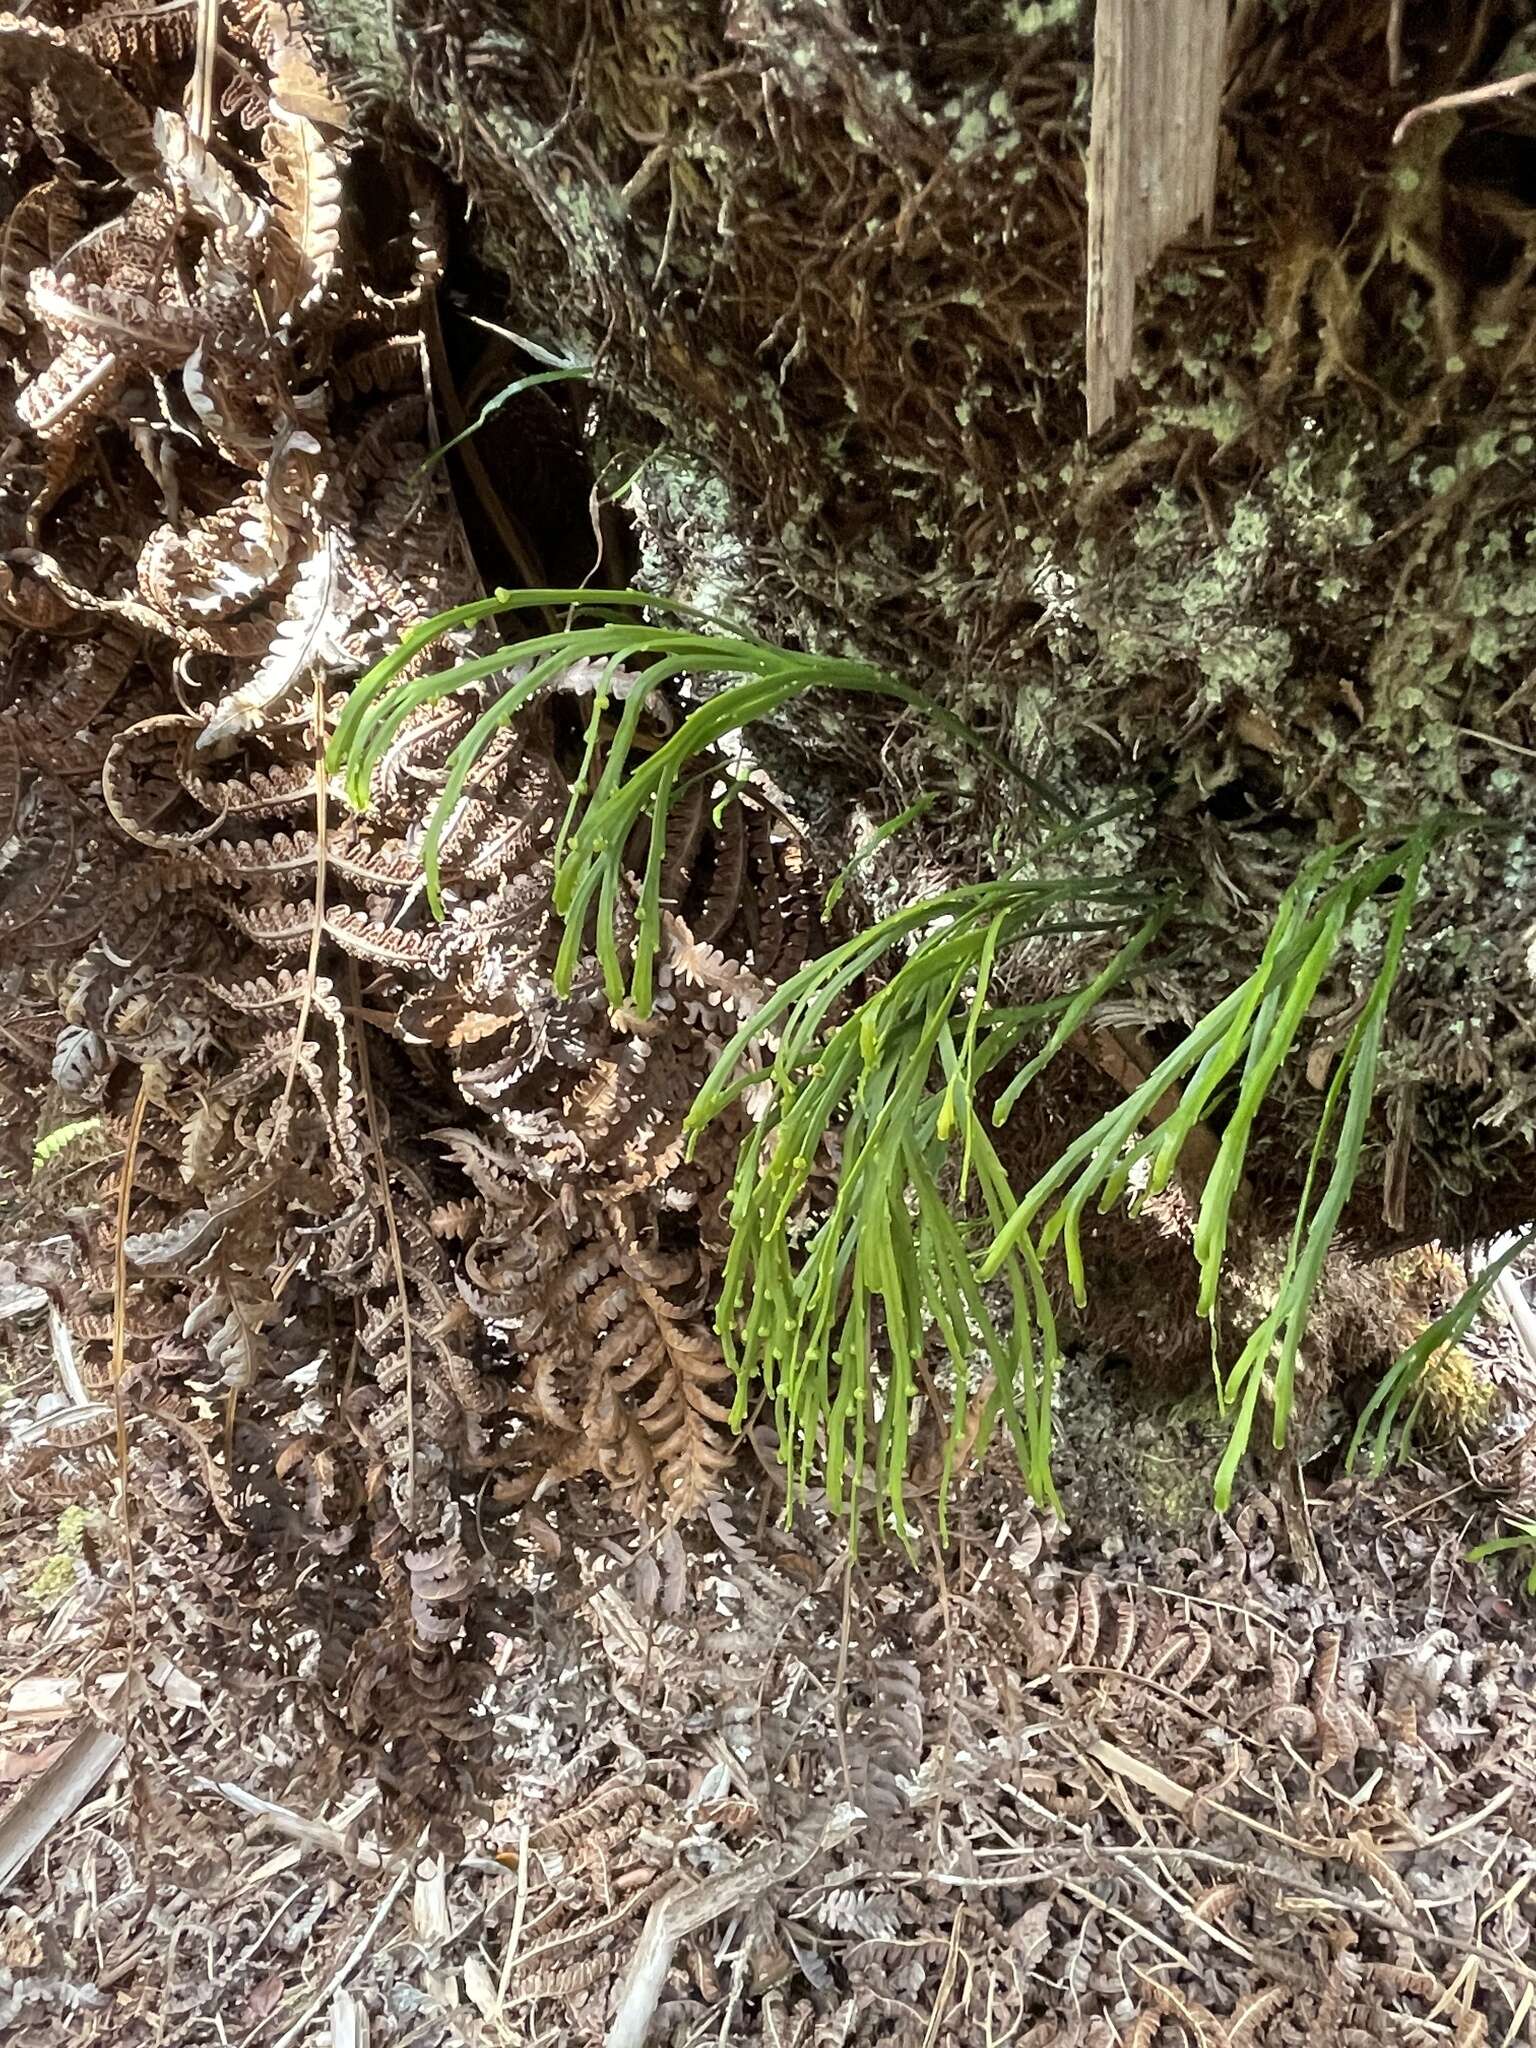 Image of flatfork fern